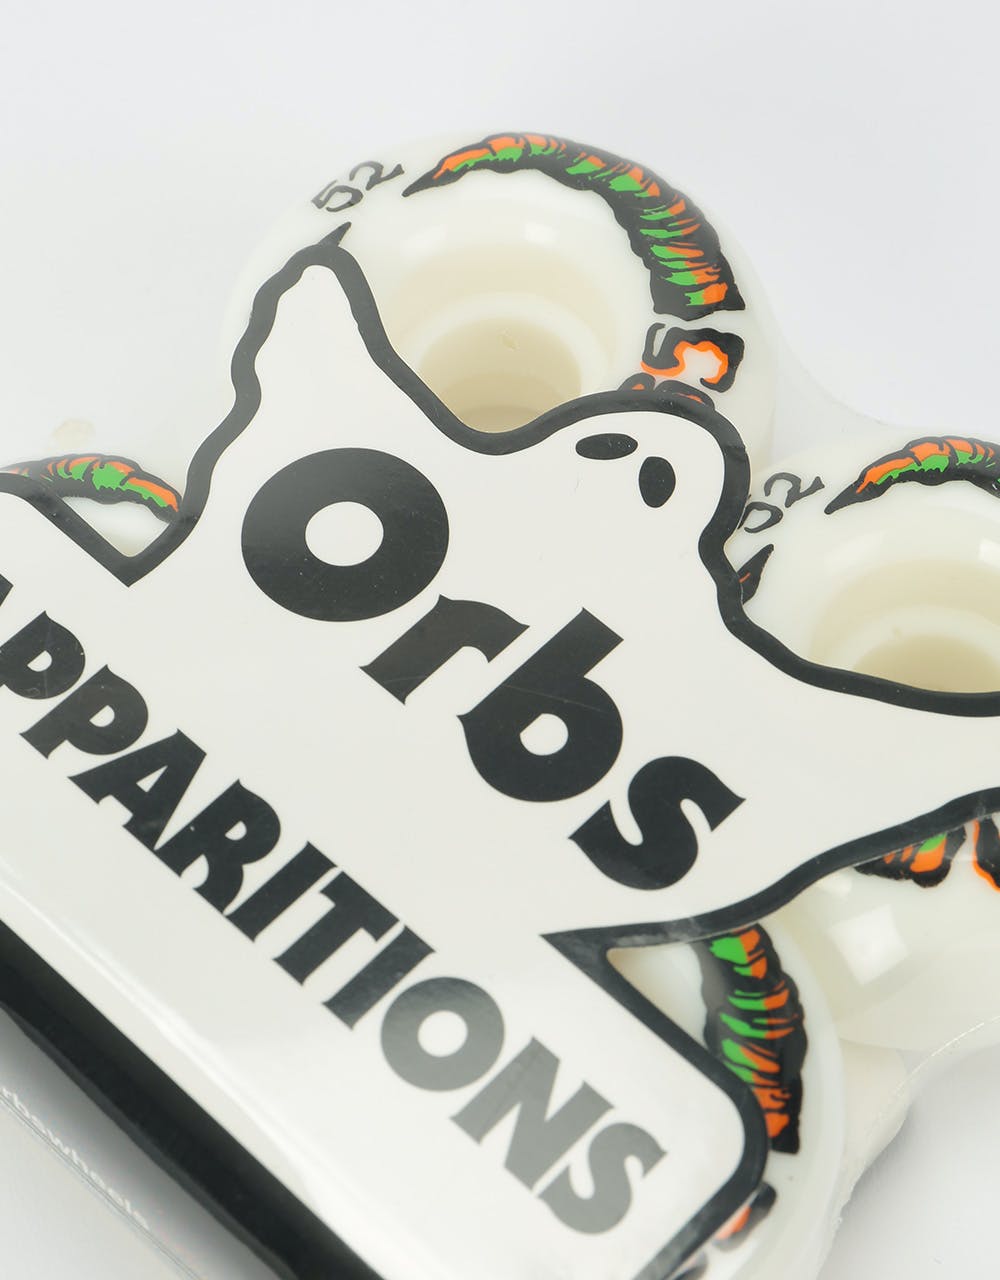 Orbs Apparitions Whites 99a Skateboard Wheel - 52mm